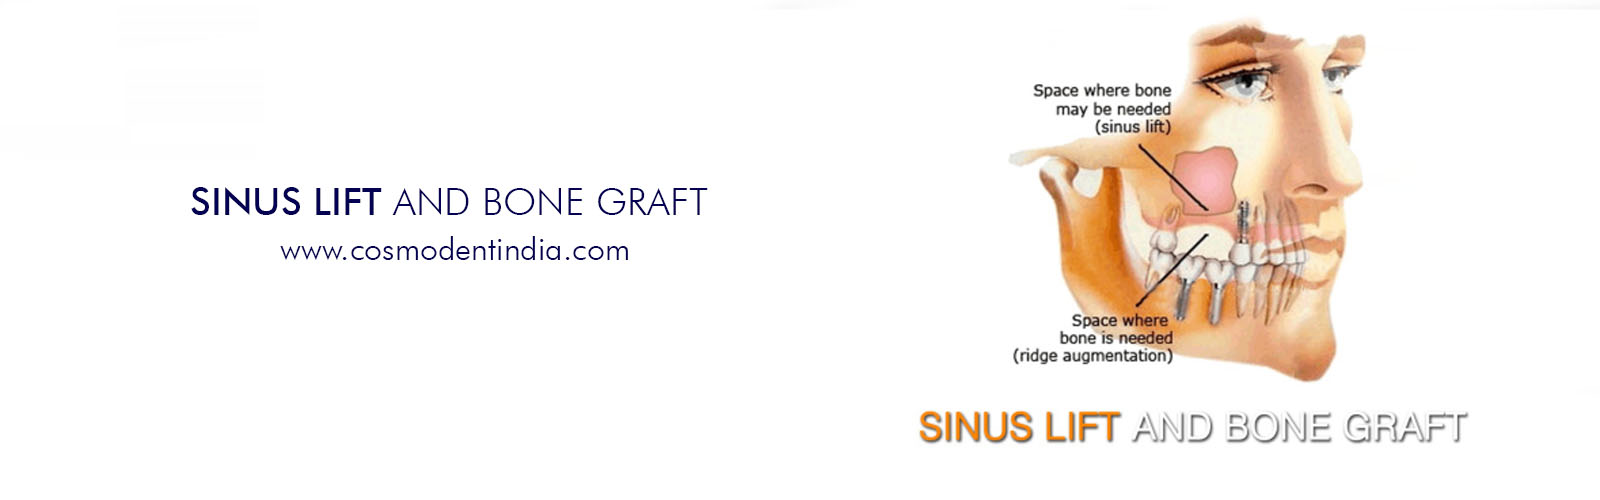 enxertos sinus-lift-and-bone